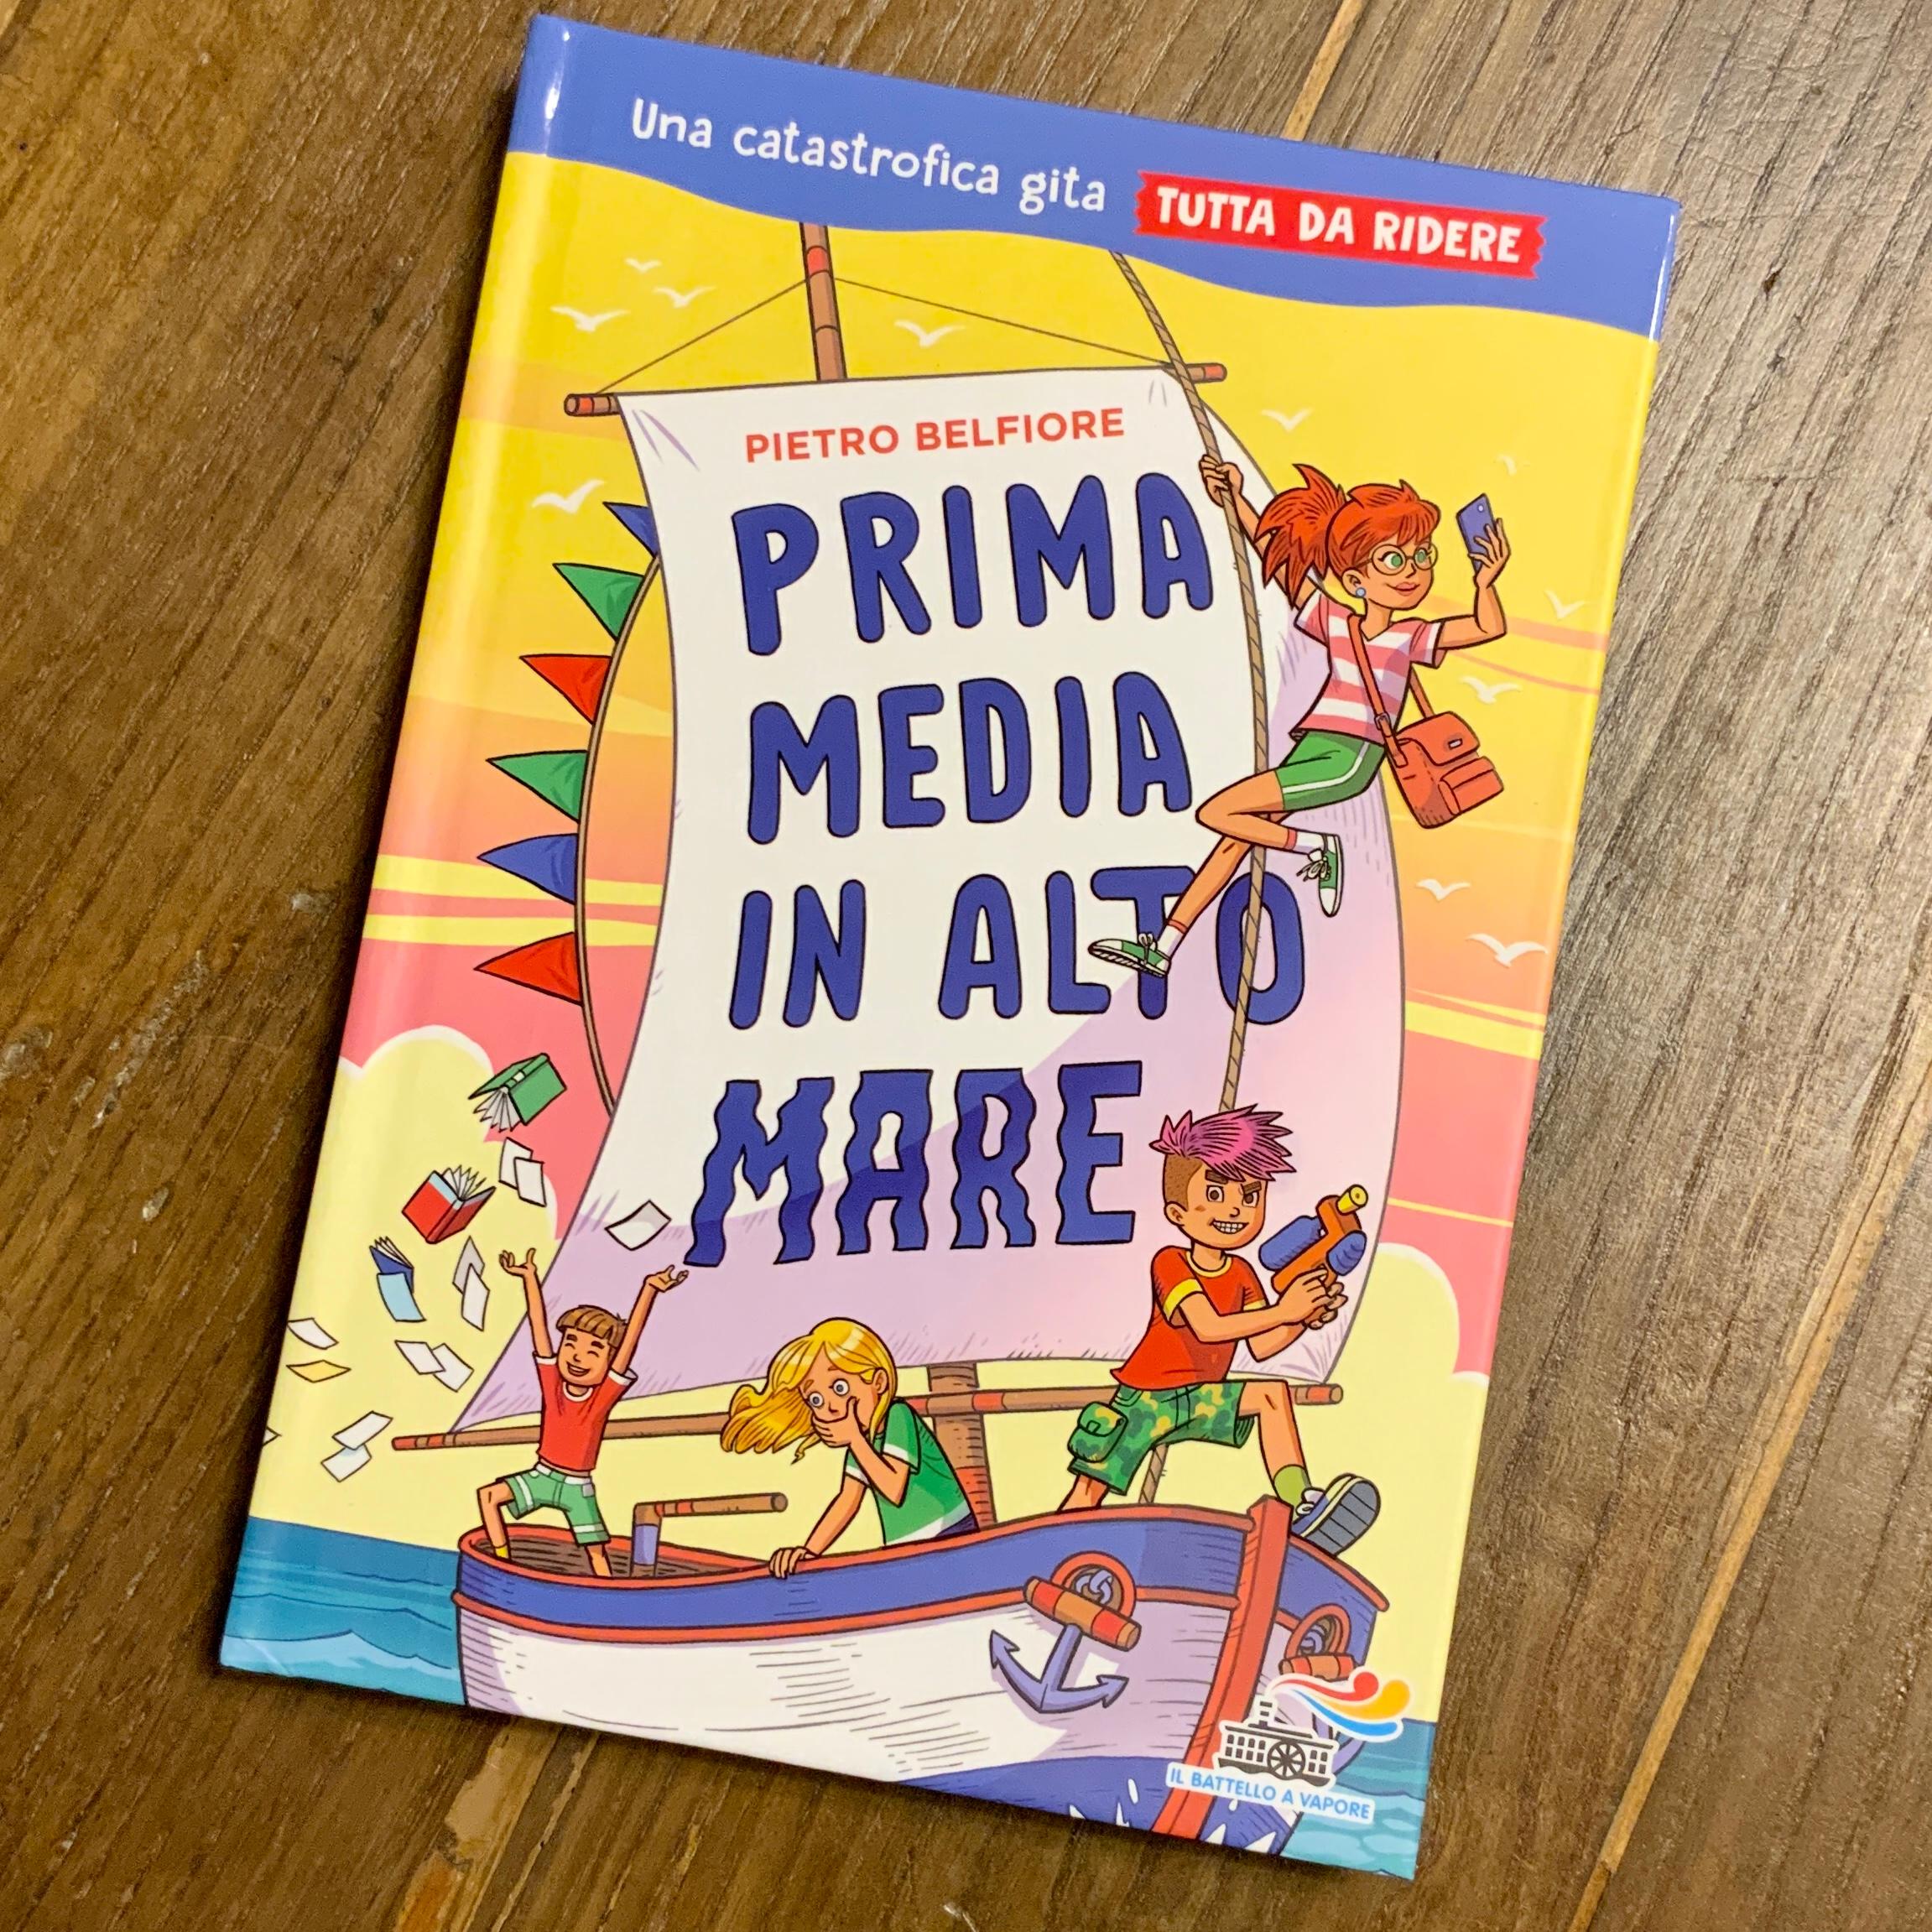 Illustrations for the children's book "Prima media in alto mare" written by Pietro Belfiore and publ